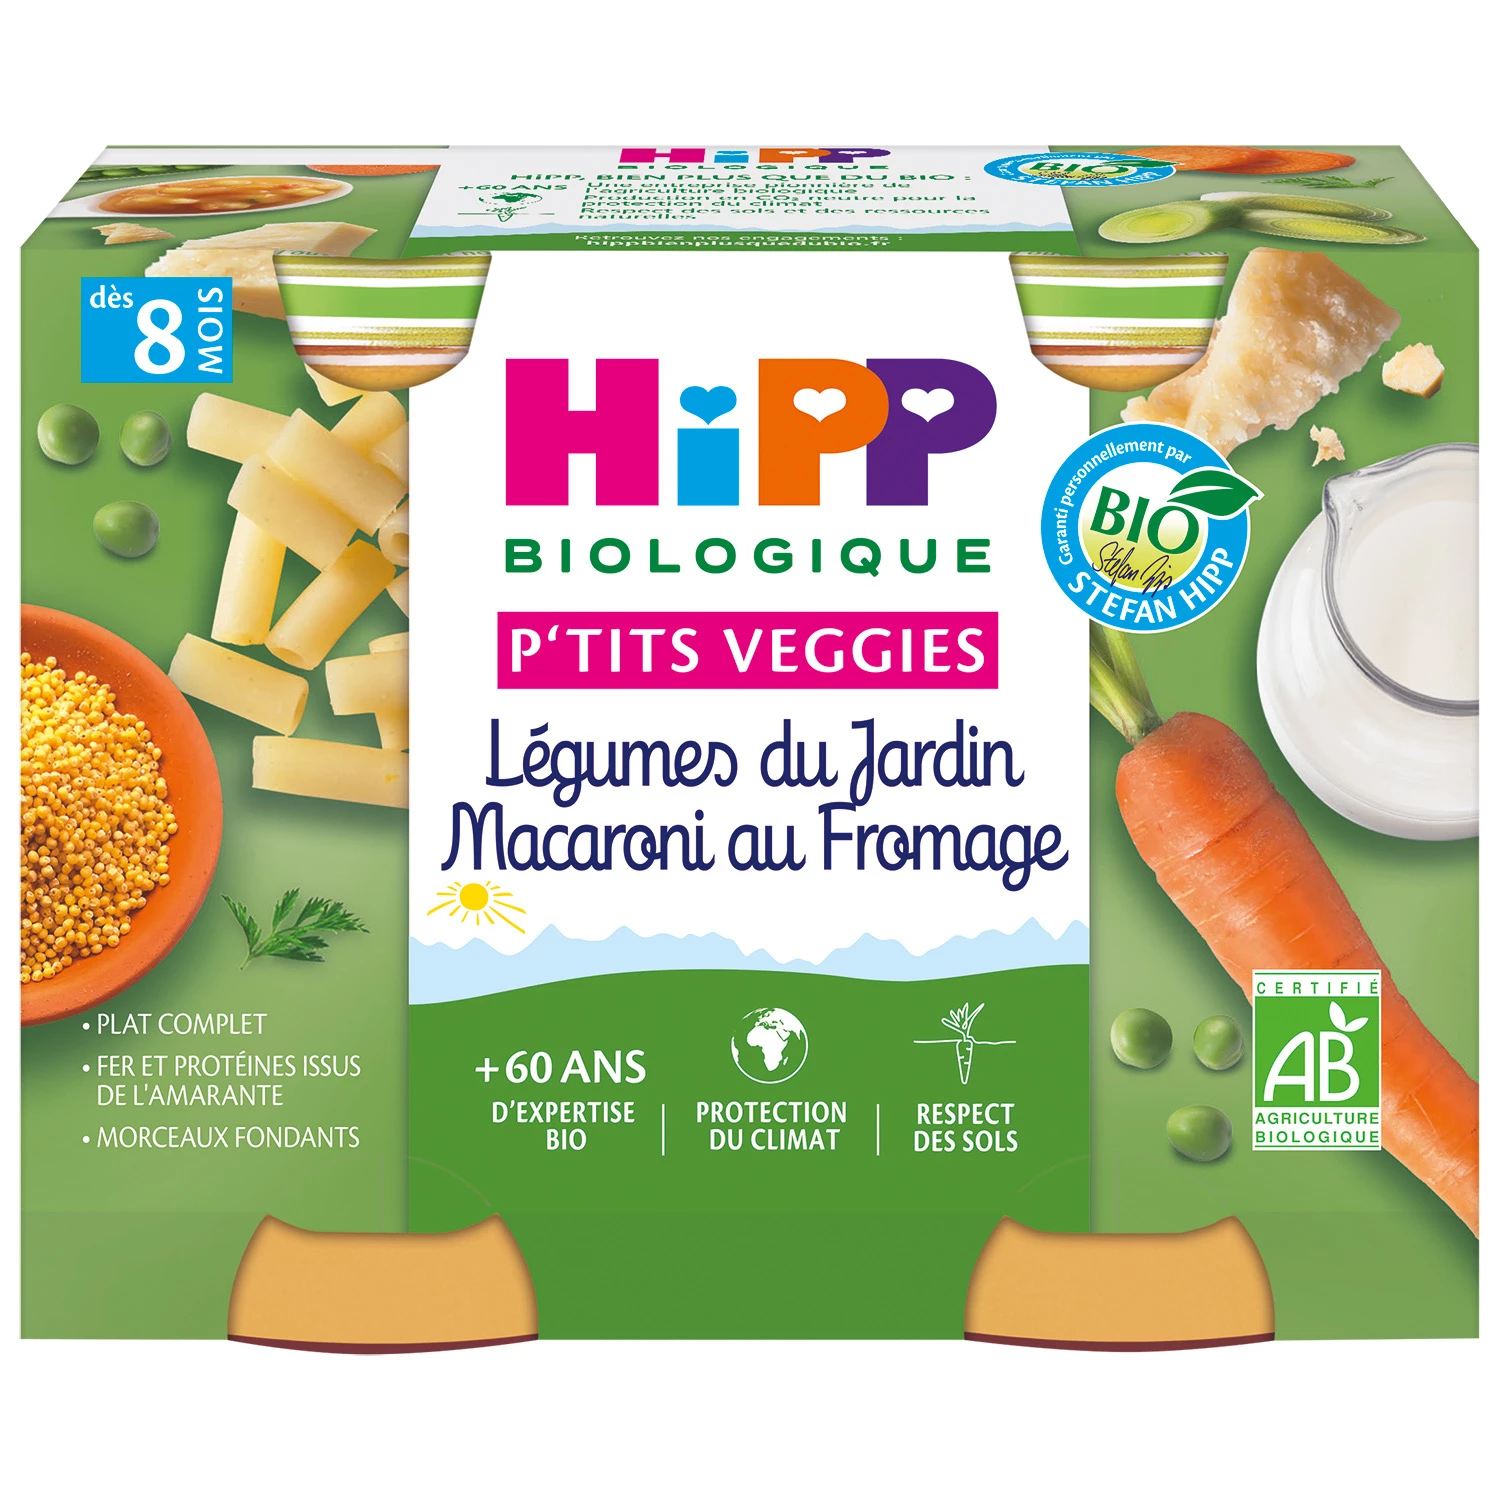 Potes pequenos para bebê a partir de 8 meses Macarrão com queijo de vegetais orgânicos da horta, 2 potes de 190g HIPP BioLOGIQUE